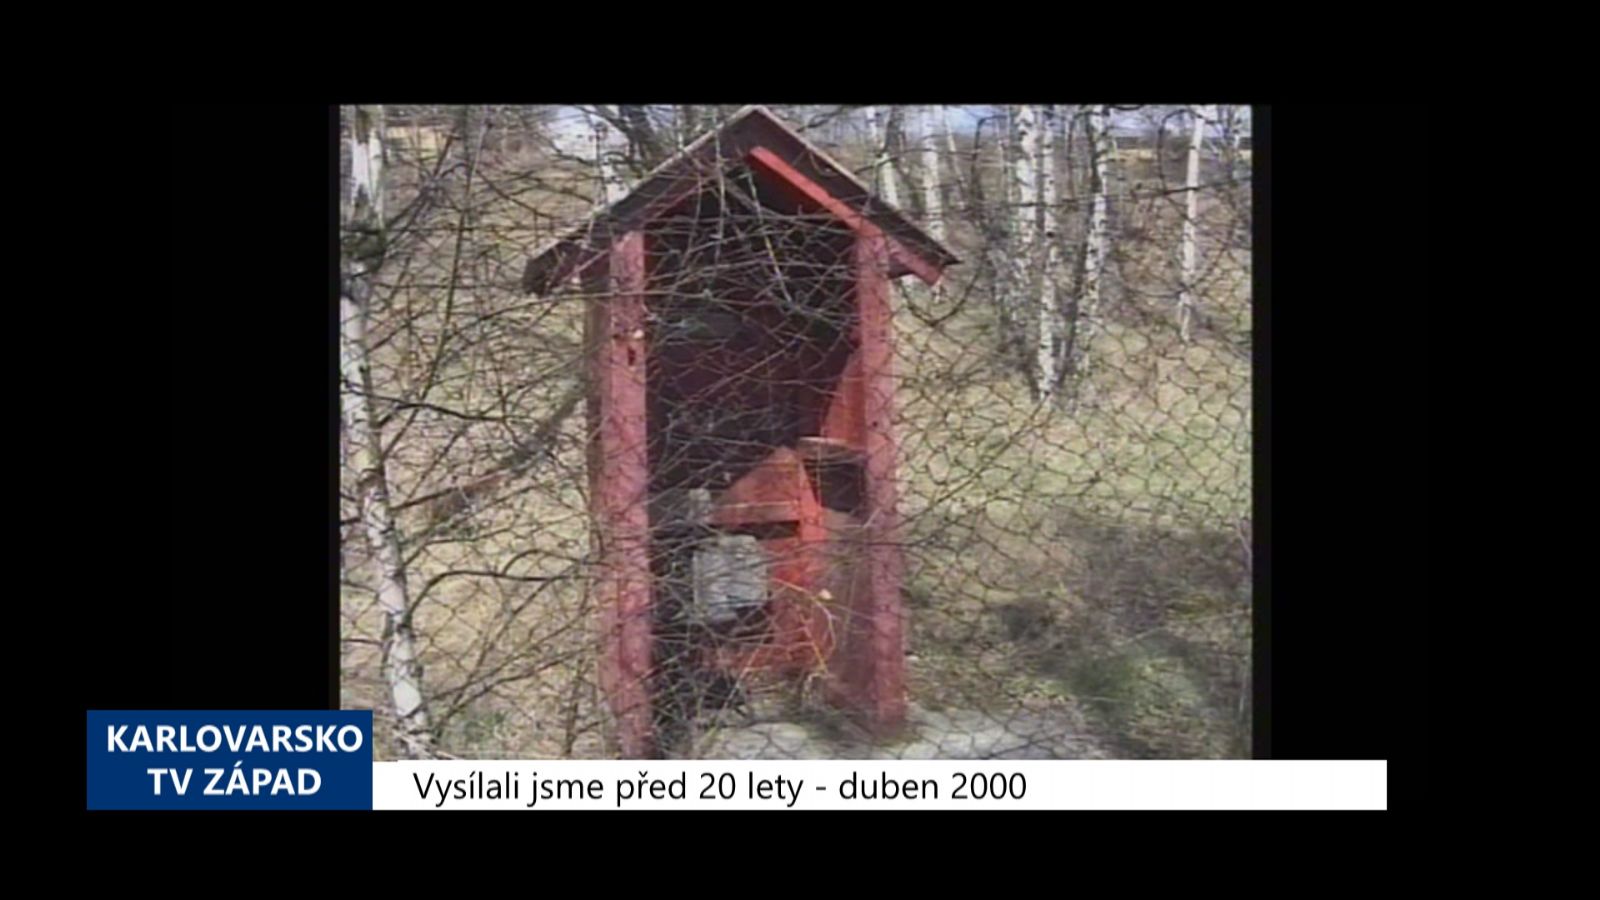 2000 – Sokolovsko: Vzniklé sdružení se snaží získat bývalý vojenský prostor (TV Západ)	